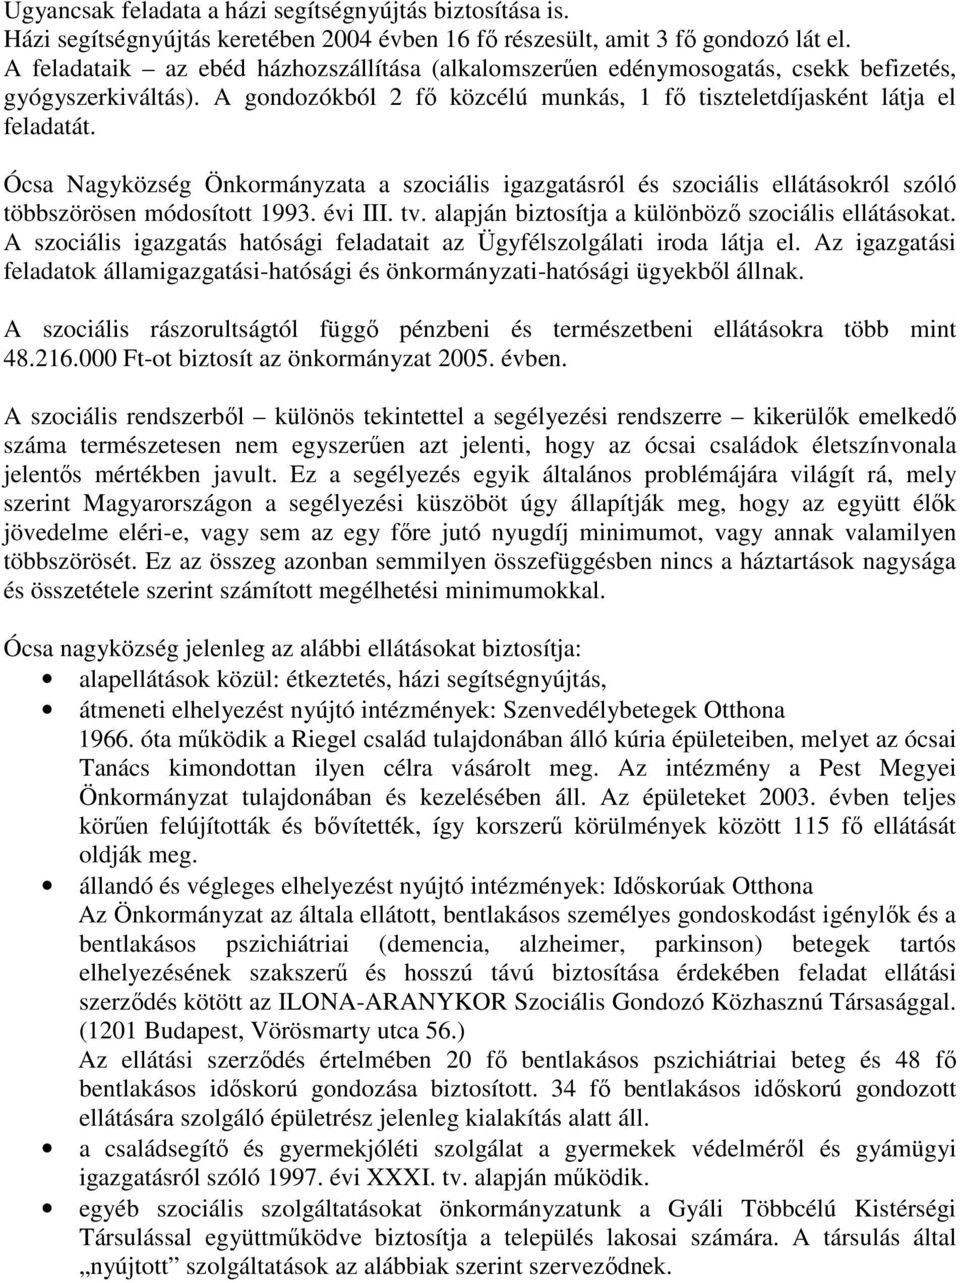 Ócsa Nagyközség Önkormányzata a szociális igazgatásról és szociális ellátásokról szóló többszörösen módosított 1993. évi III. tv. alapján biztosítja a különbözı szociális ellátásokat.